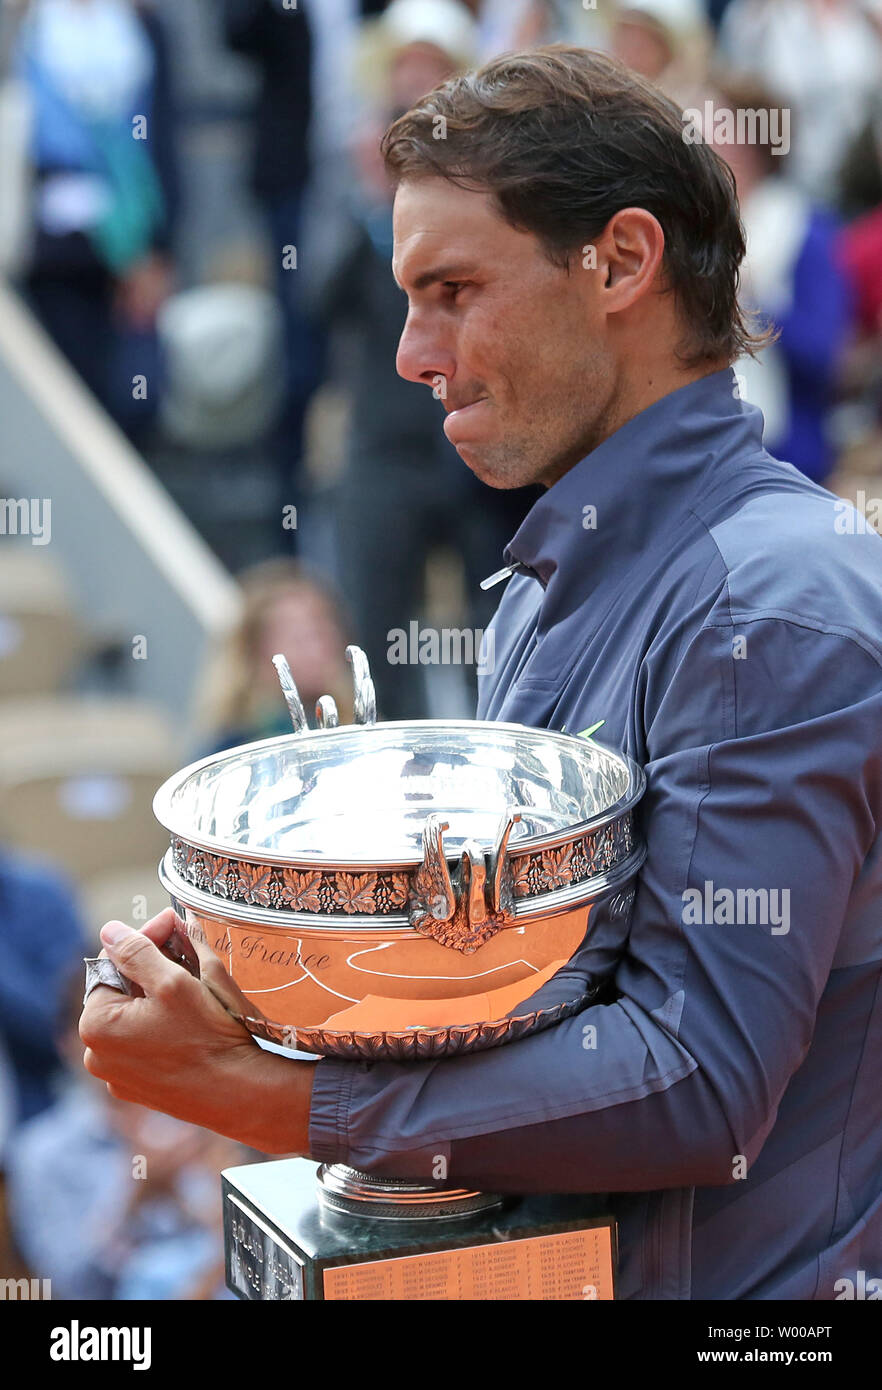 Rafael Nadal de l'Espagne détient le trophée du championnat après avoir remporté sa French Open men's match final contre Dominic Thiem de l'Autriche à Roland Garros à Paris le 9 juin 2019. Nadal défait Thiem 6-3, 5-7, 6-1, 6-1 pour remporter son 12e championnat de France. Photo de David Silpa/UPI Banque D'Images